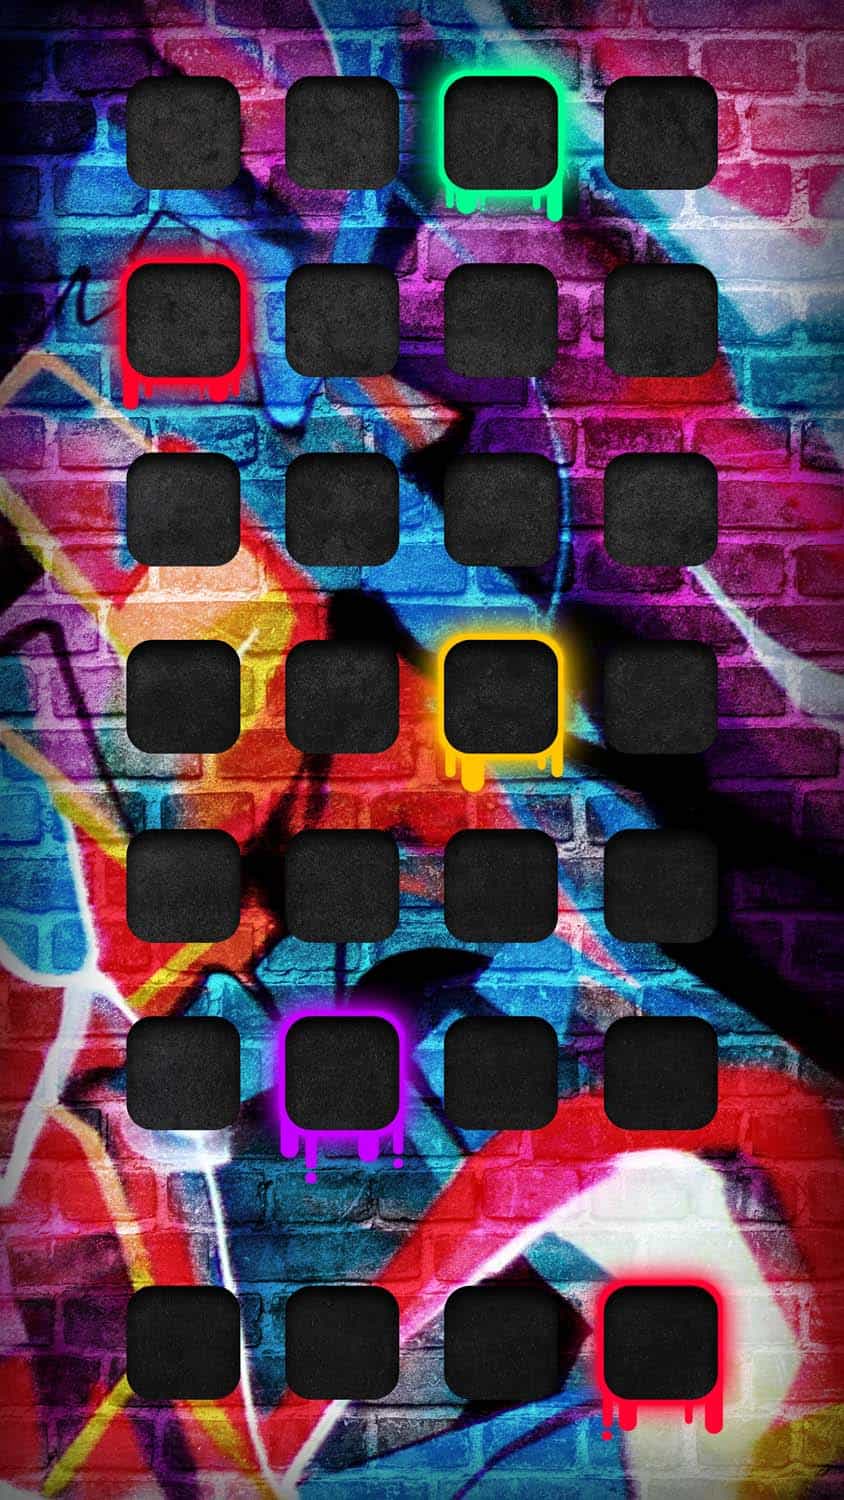 Graffiti Wall iOS App Dock iPhone